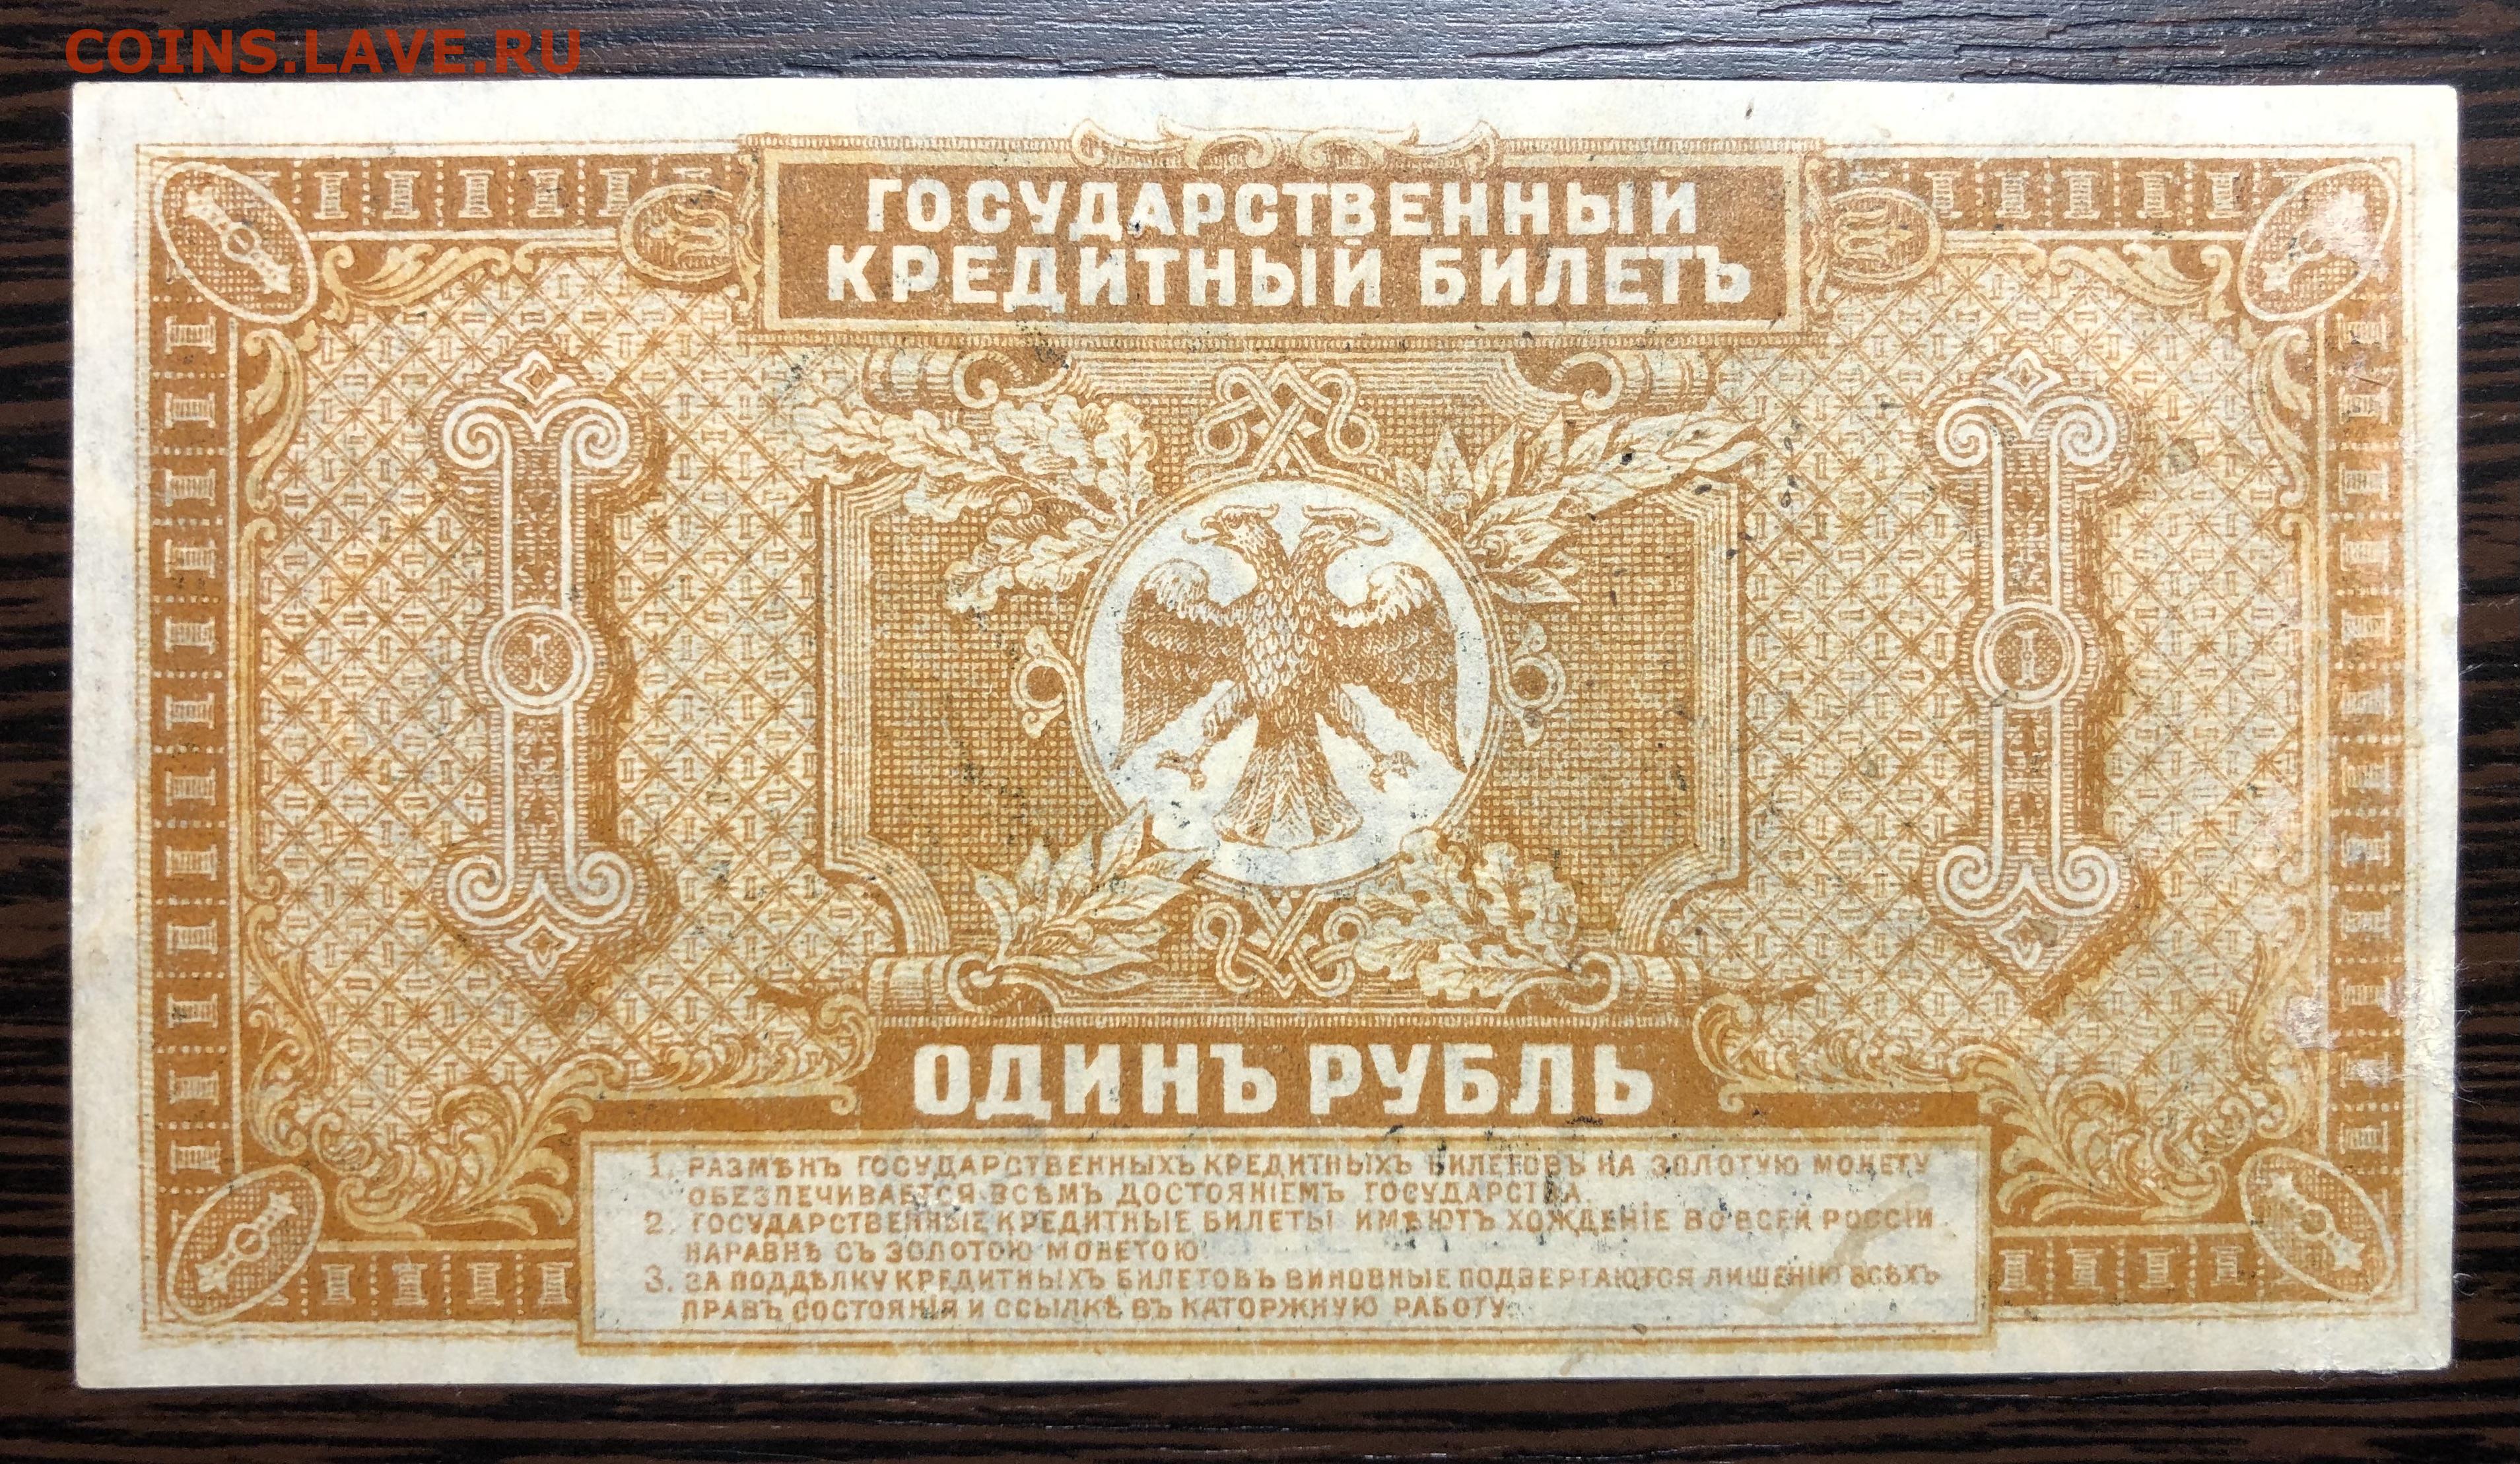 1 рубль в 80 е. 1 Рубль 1920 год Дальний Восток. Государственный кредитный билет 1 рубль 1920. Банкнота 1 рубль. Банкнота 1 рубль 1920.